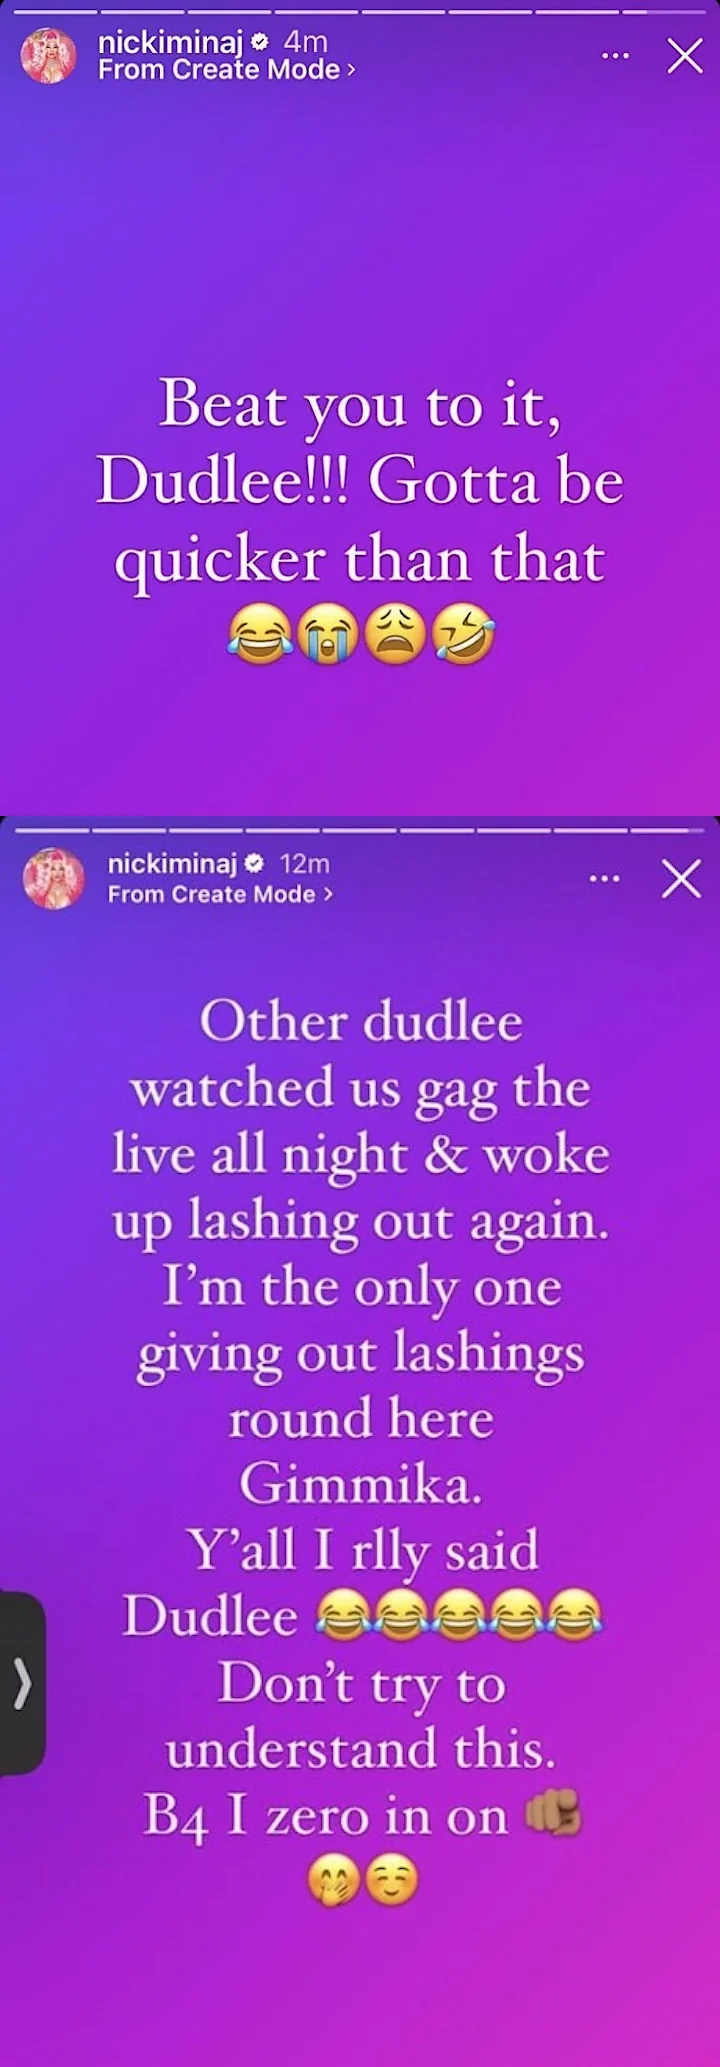 Nicki Minaj's IG posts